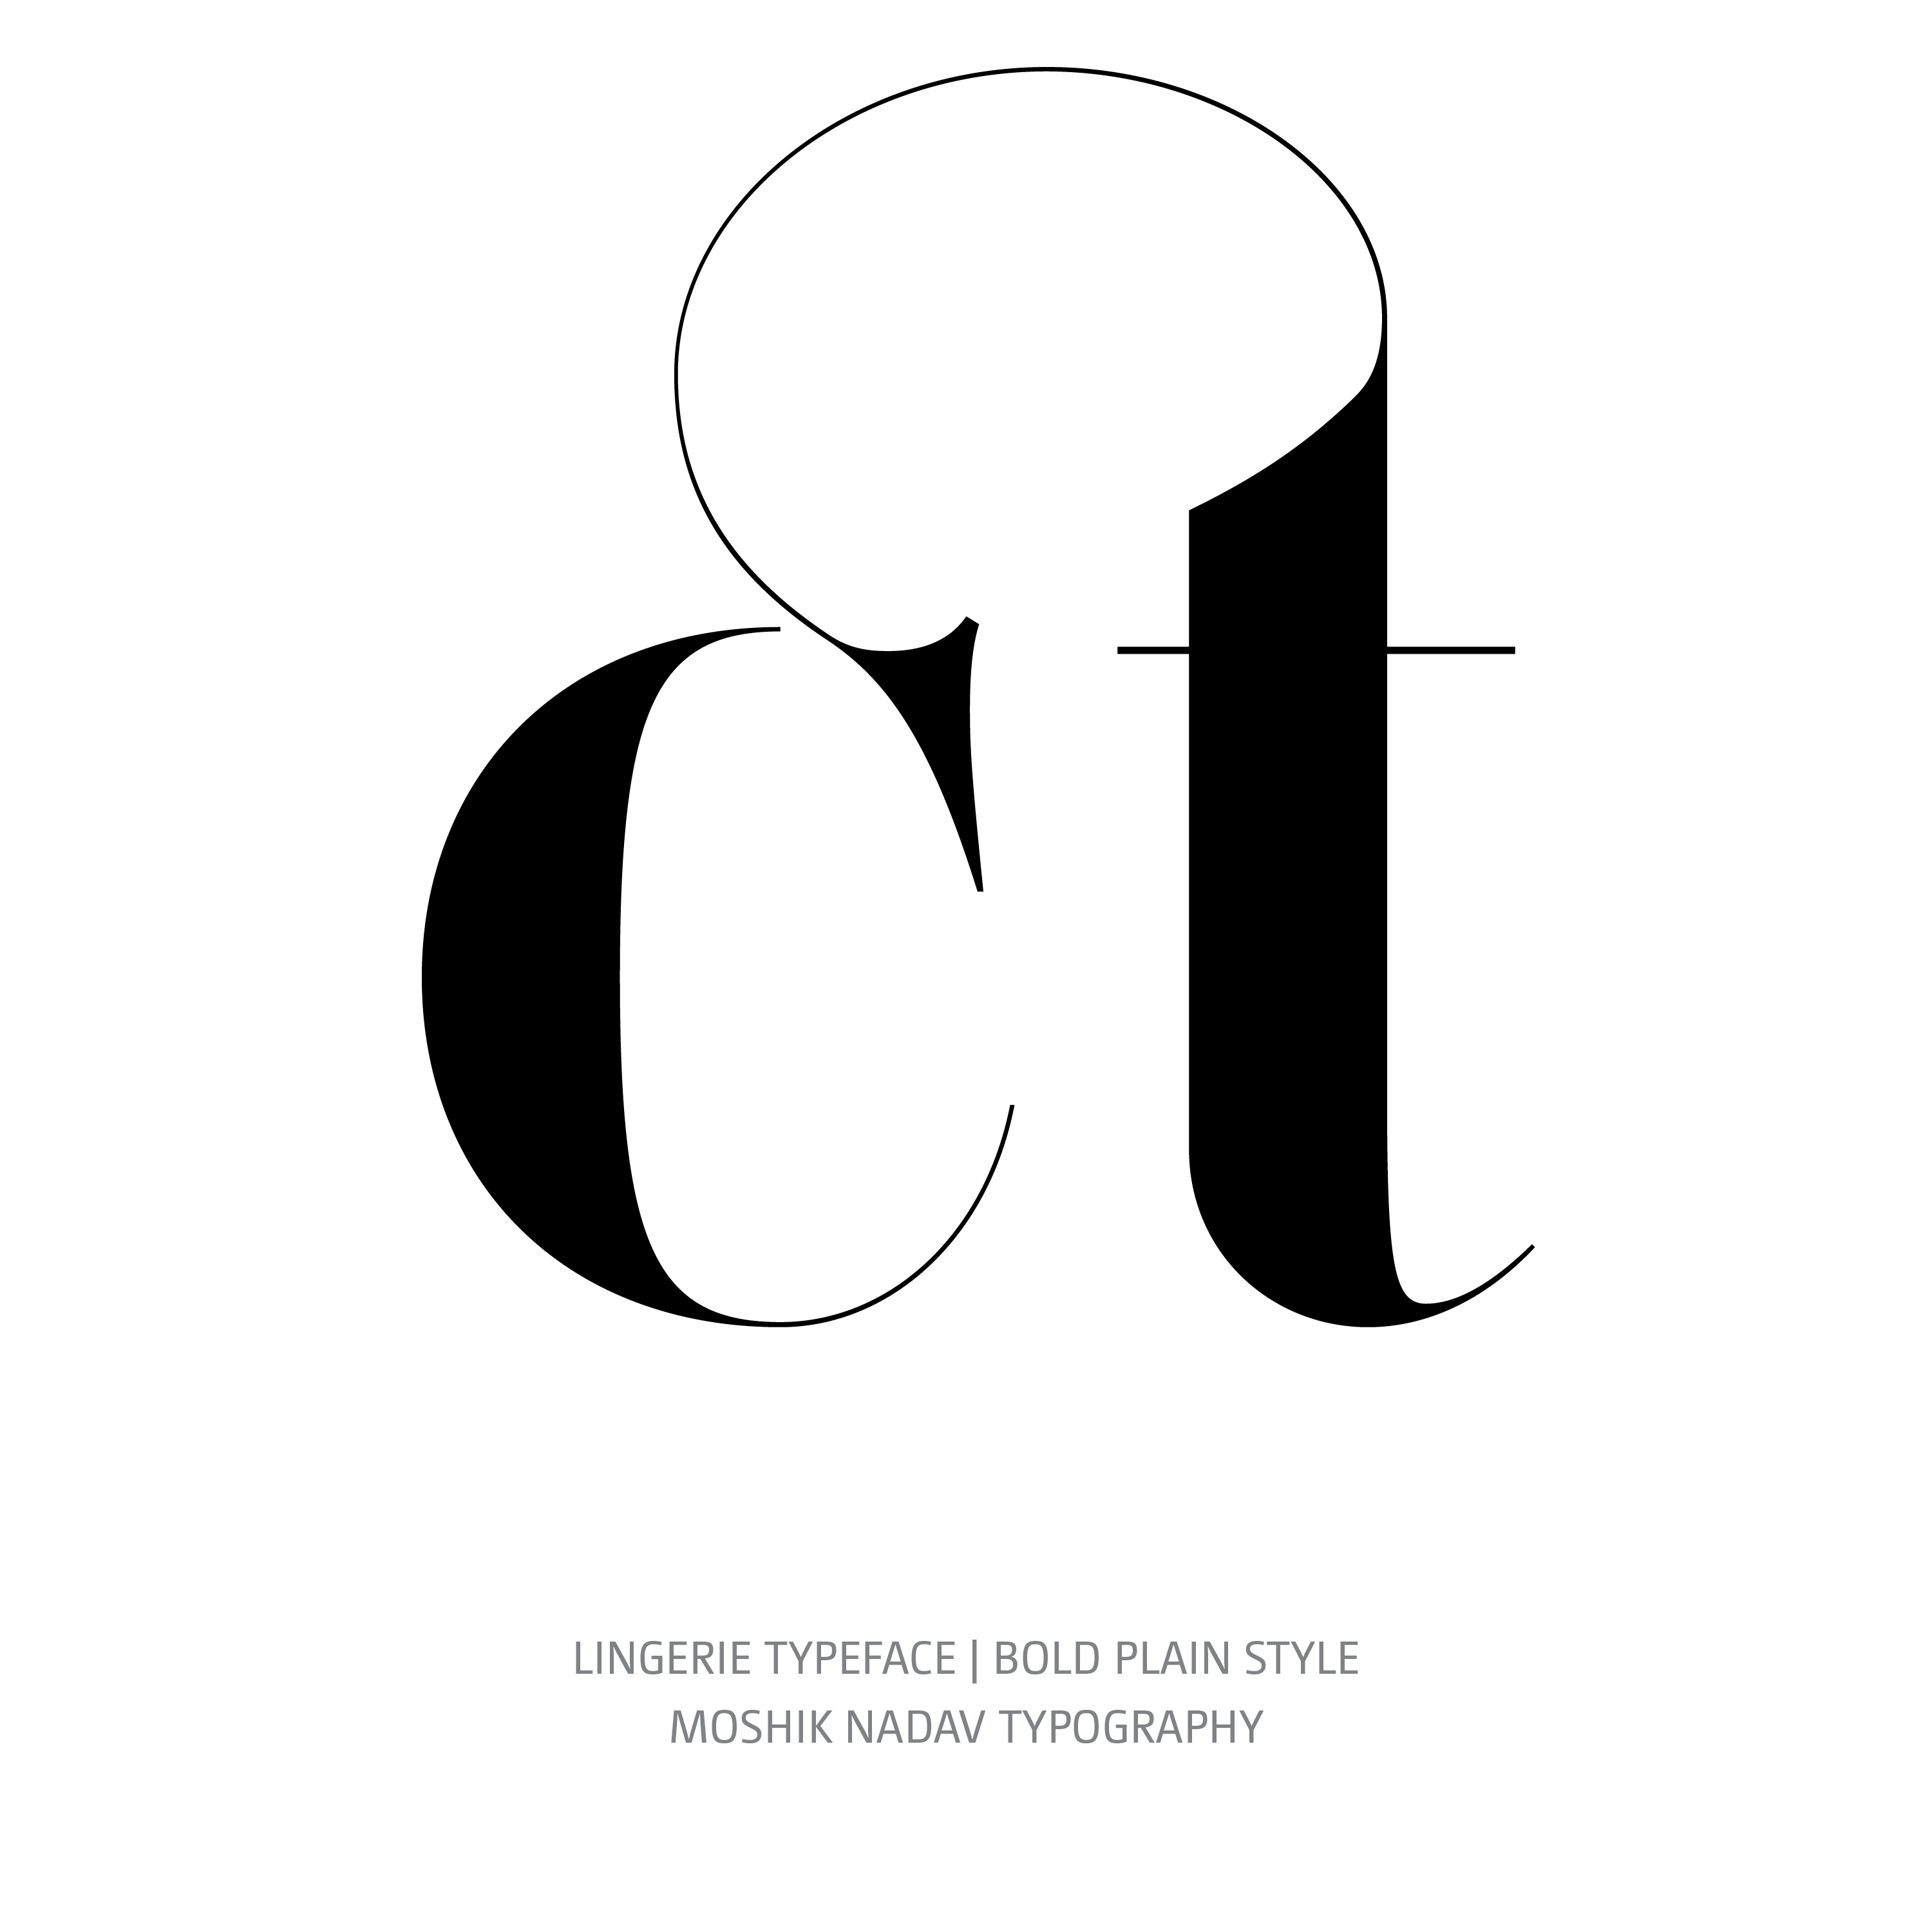 Lingerie Typeface Bold Plain glyph